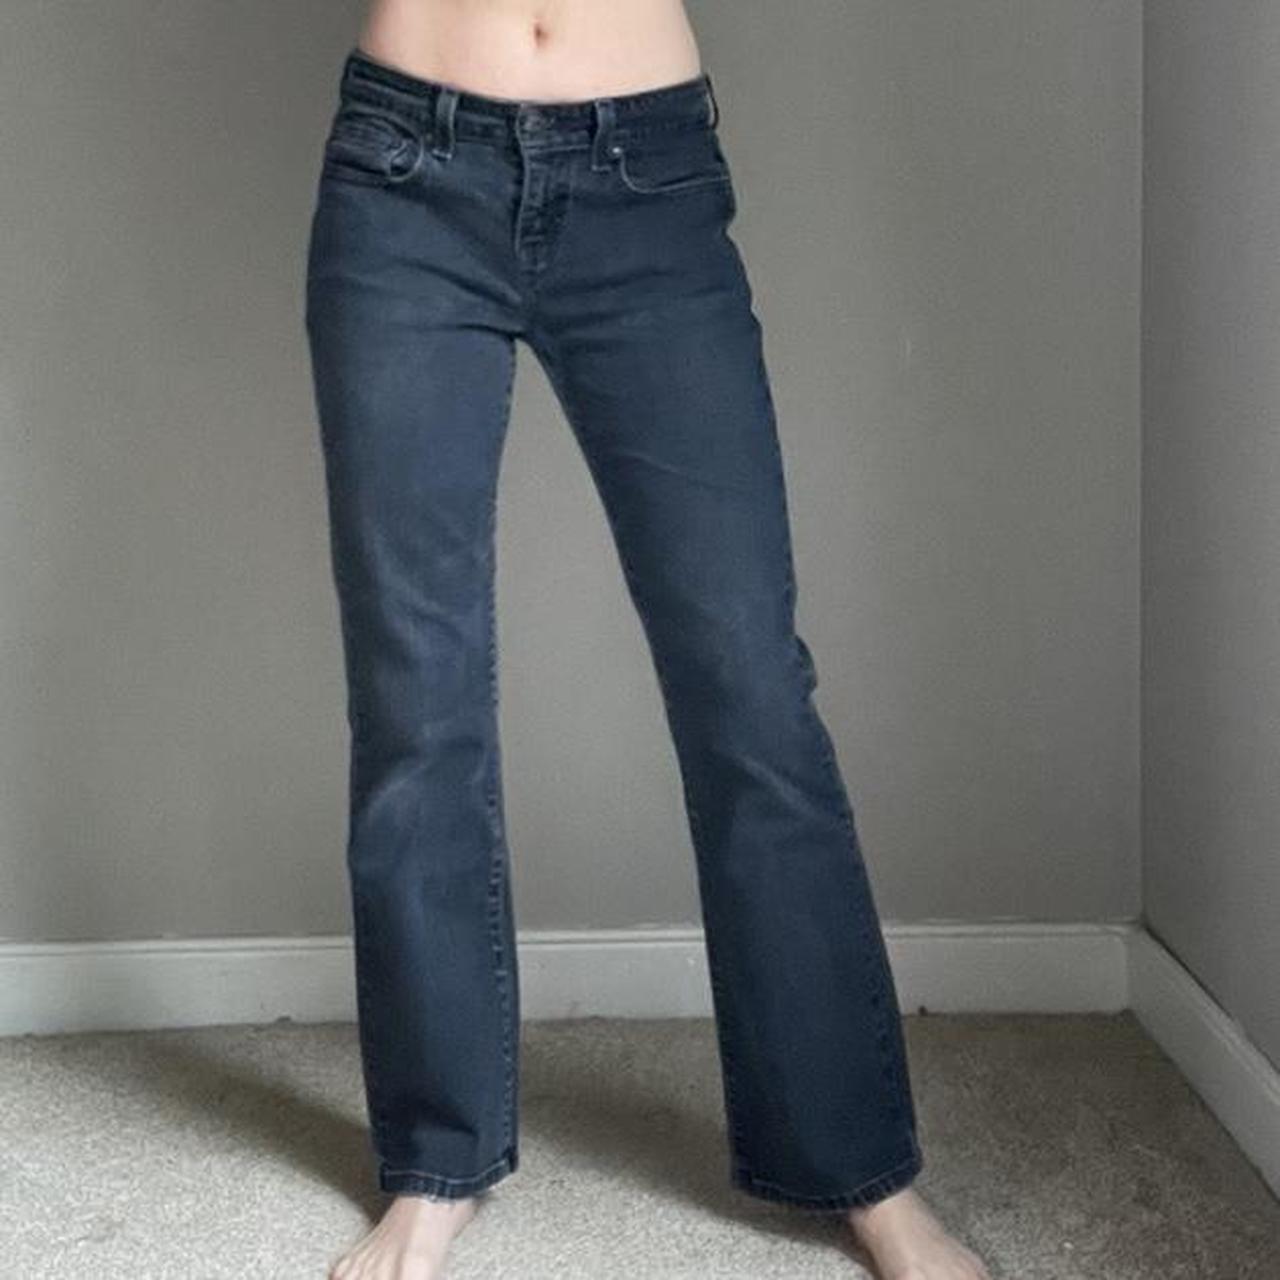 Cute vintage Levi’s jeans 💙low rise 💙black 💙515... - Depop